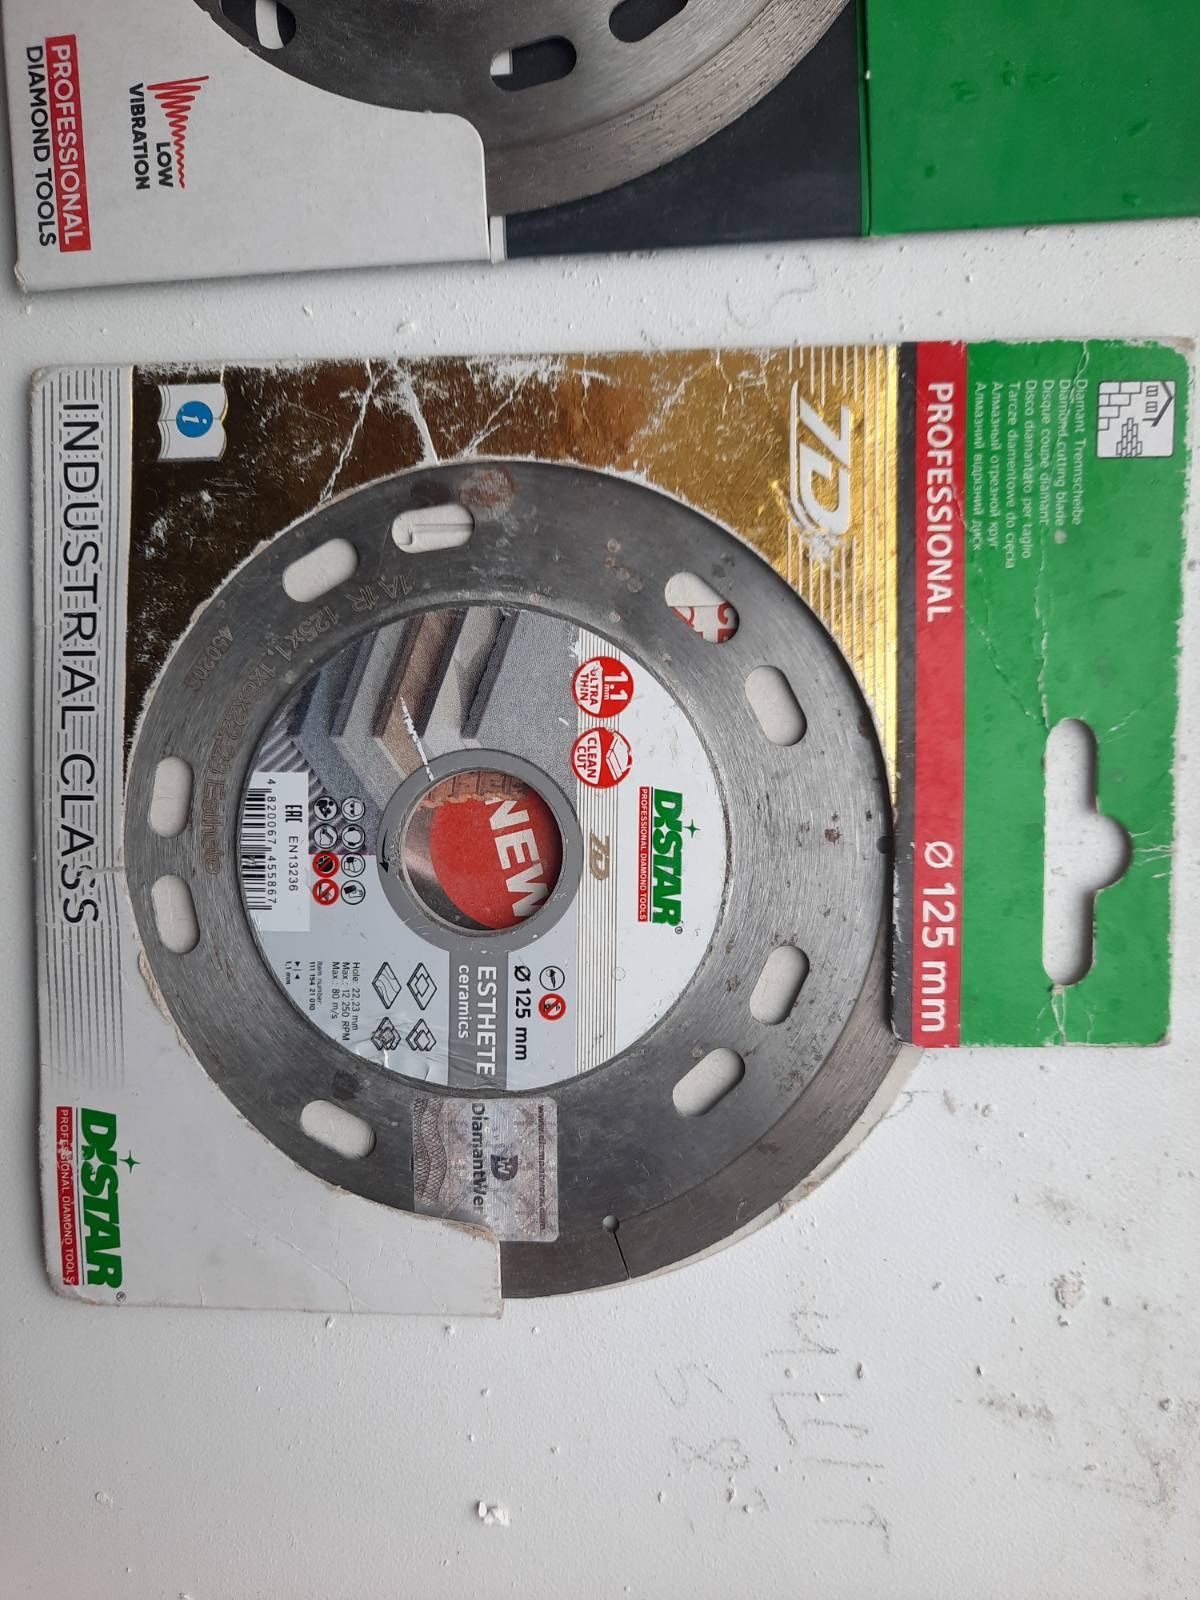 Продам новые диски  для плитки дистар 125мм